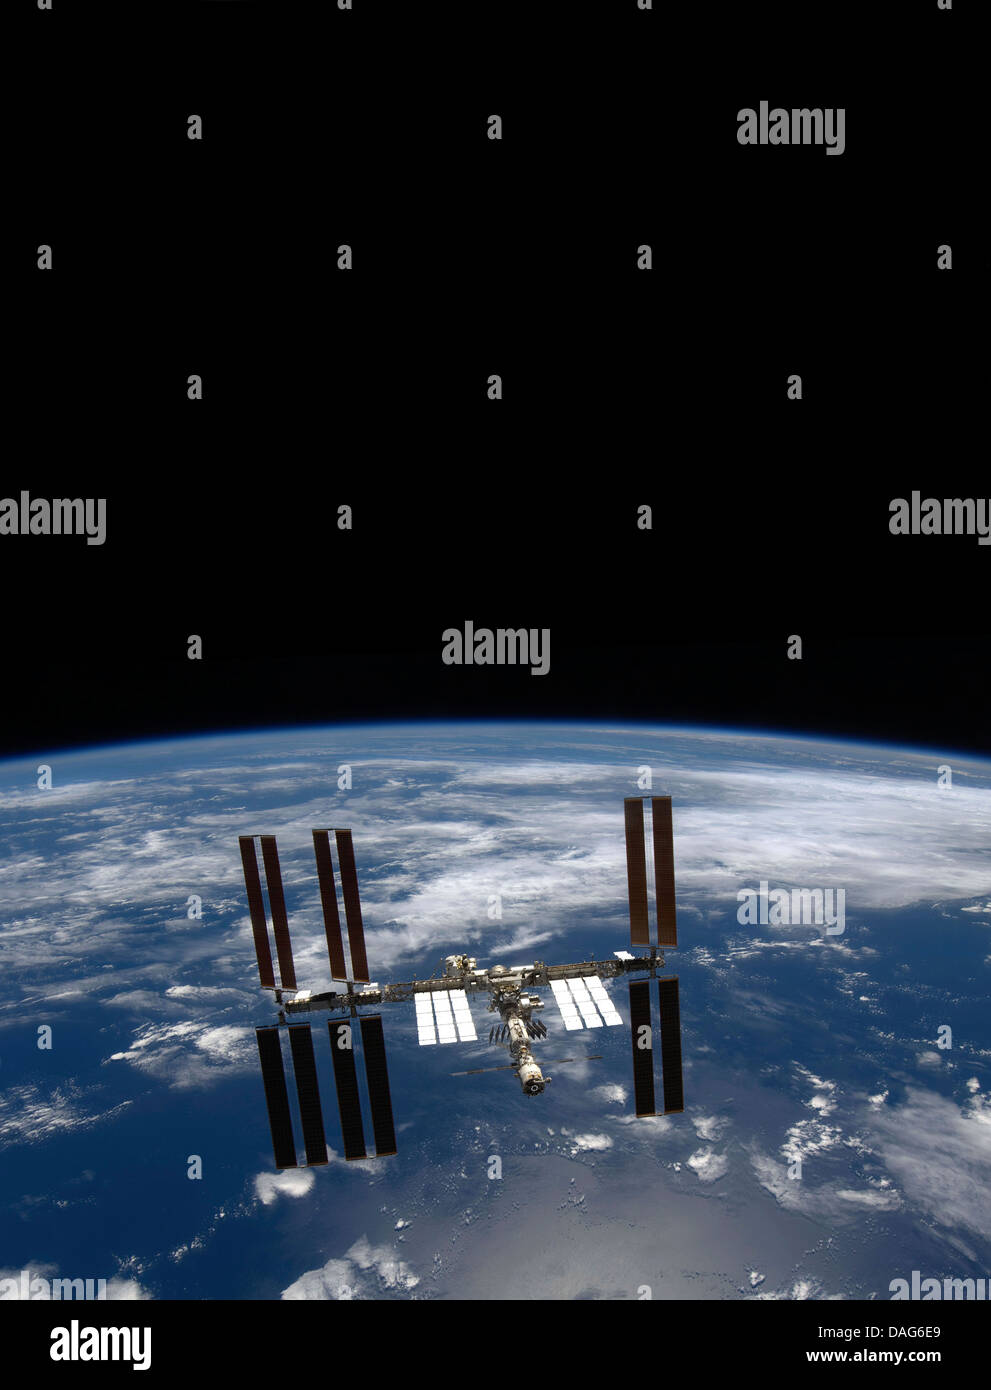 La massa e la nerezza di spazio, la stazione spaziale internazionale. Versione ottimizzata di un originale immagine della NASA. Credit NASA Foto Stock